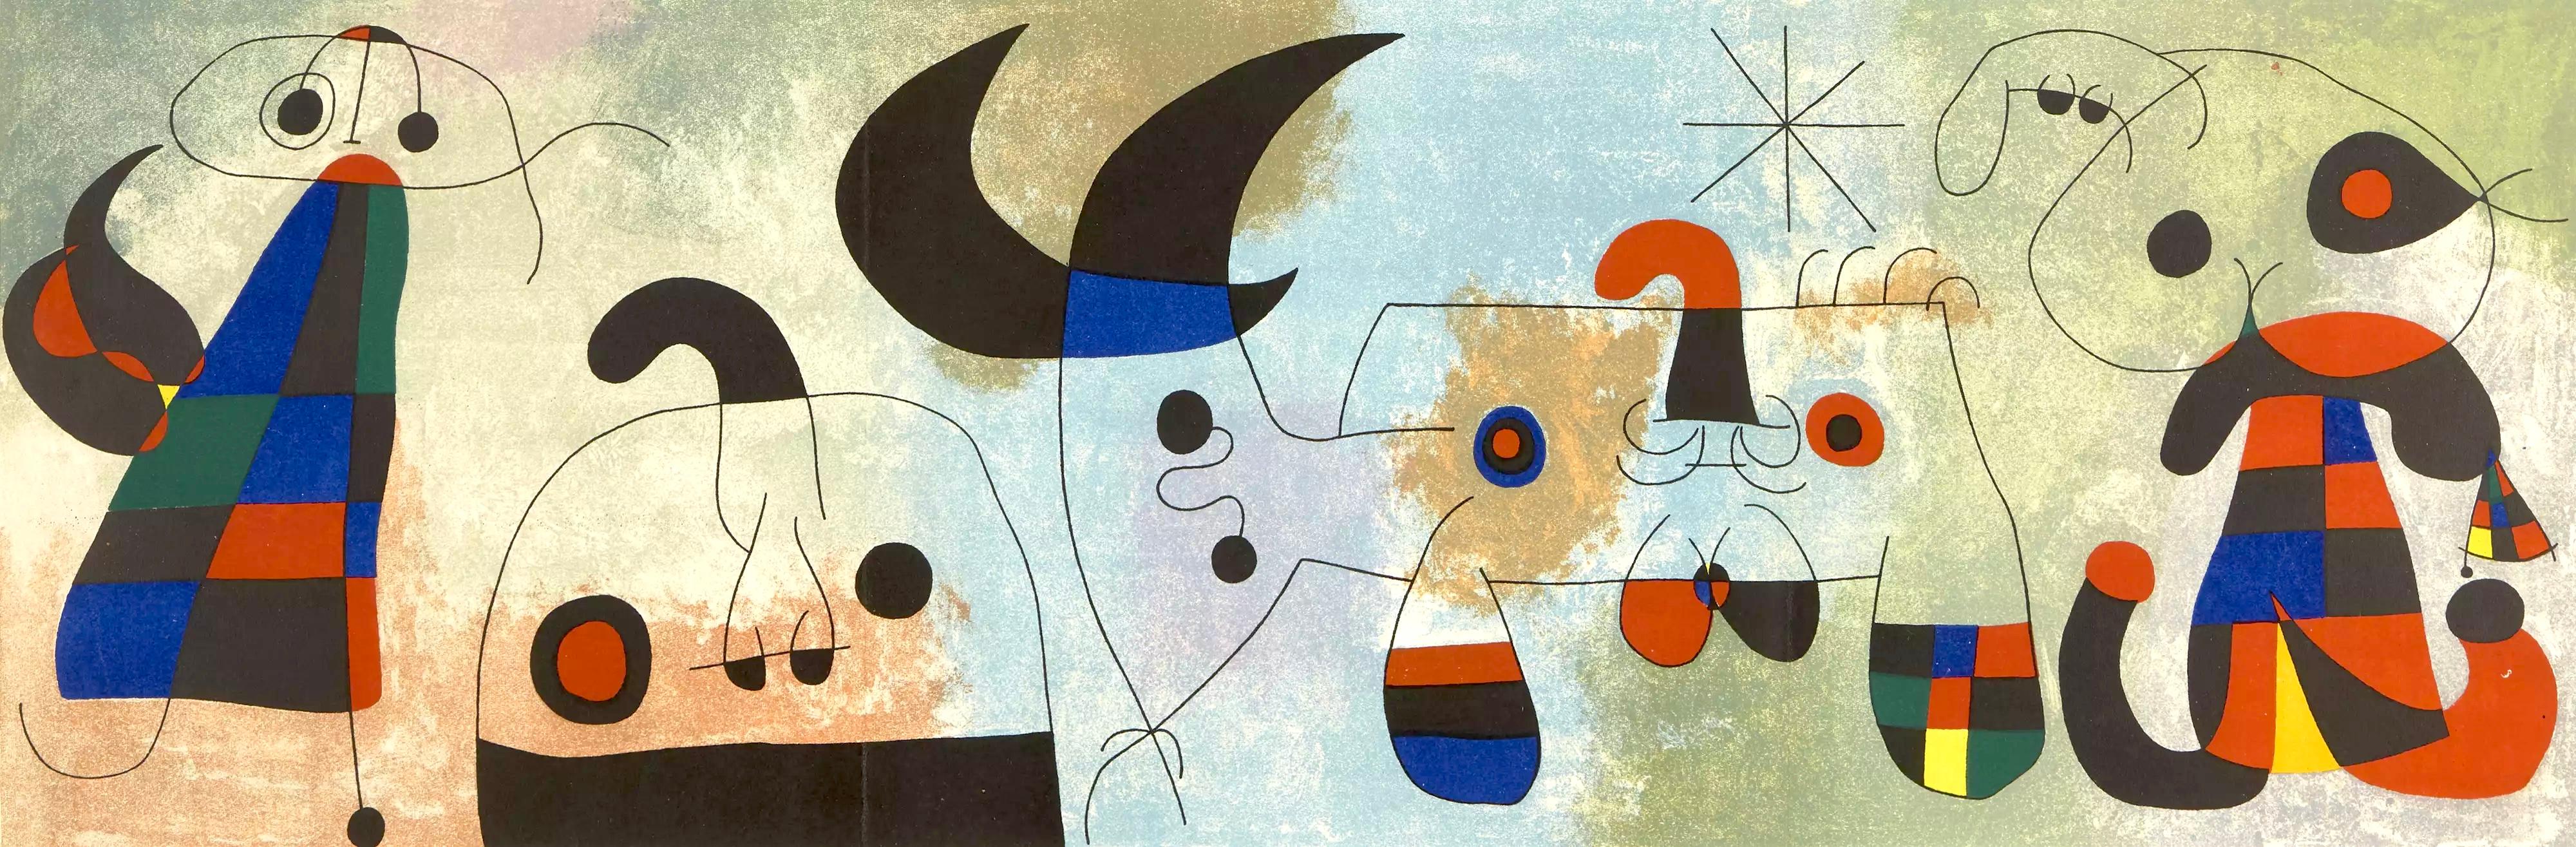 Joan Miró Figurative Print - Miró, Sur Quatre Murs, Derrière le miroir (after)